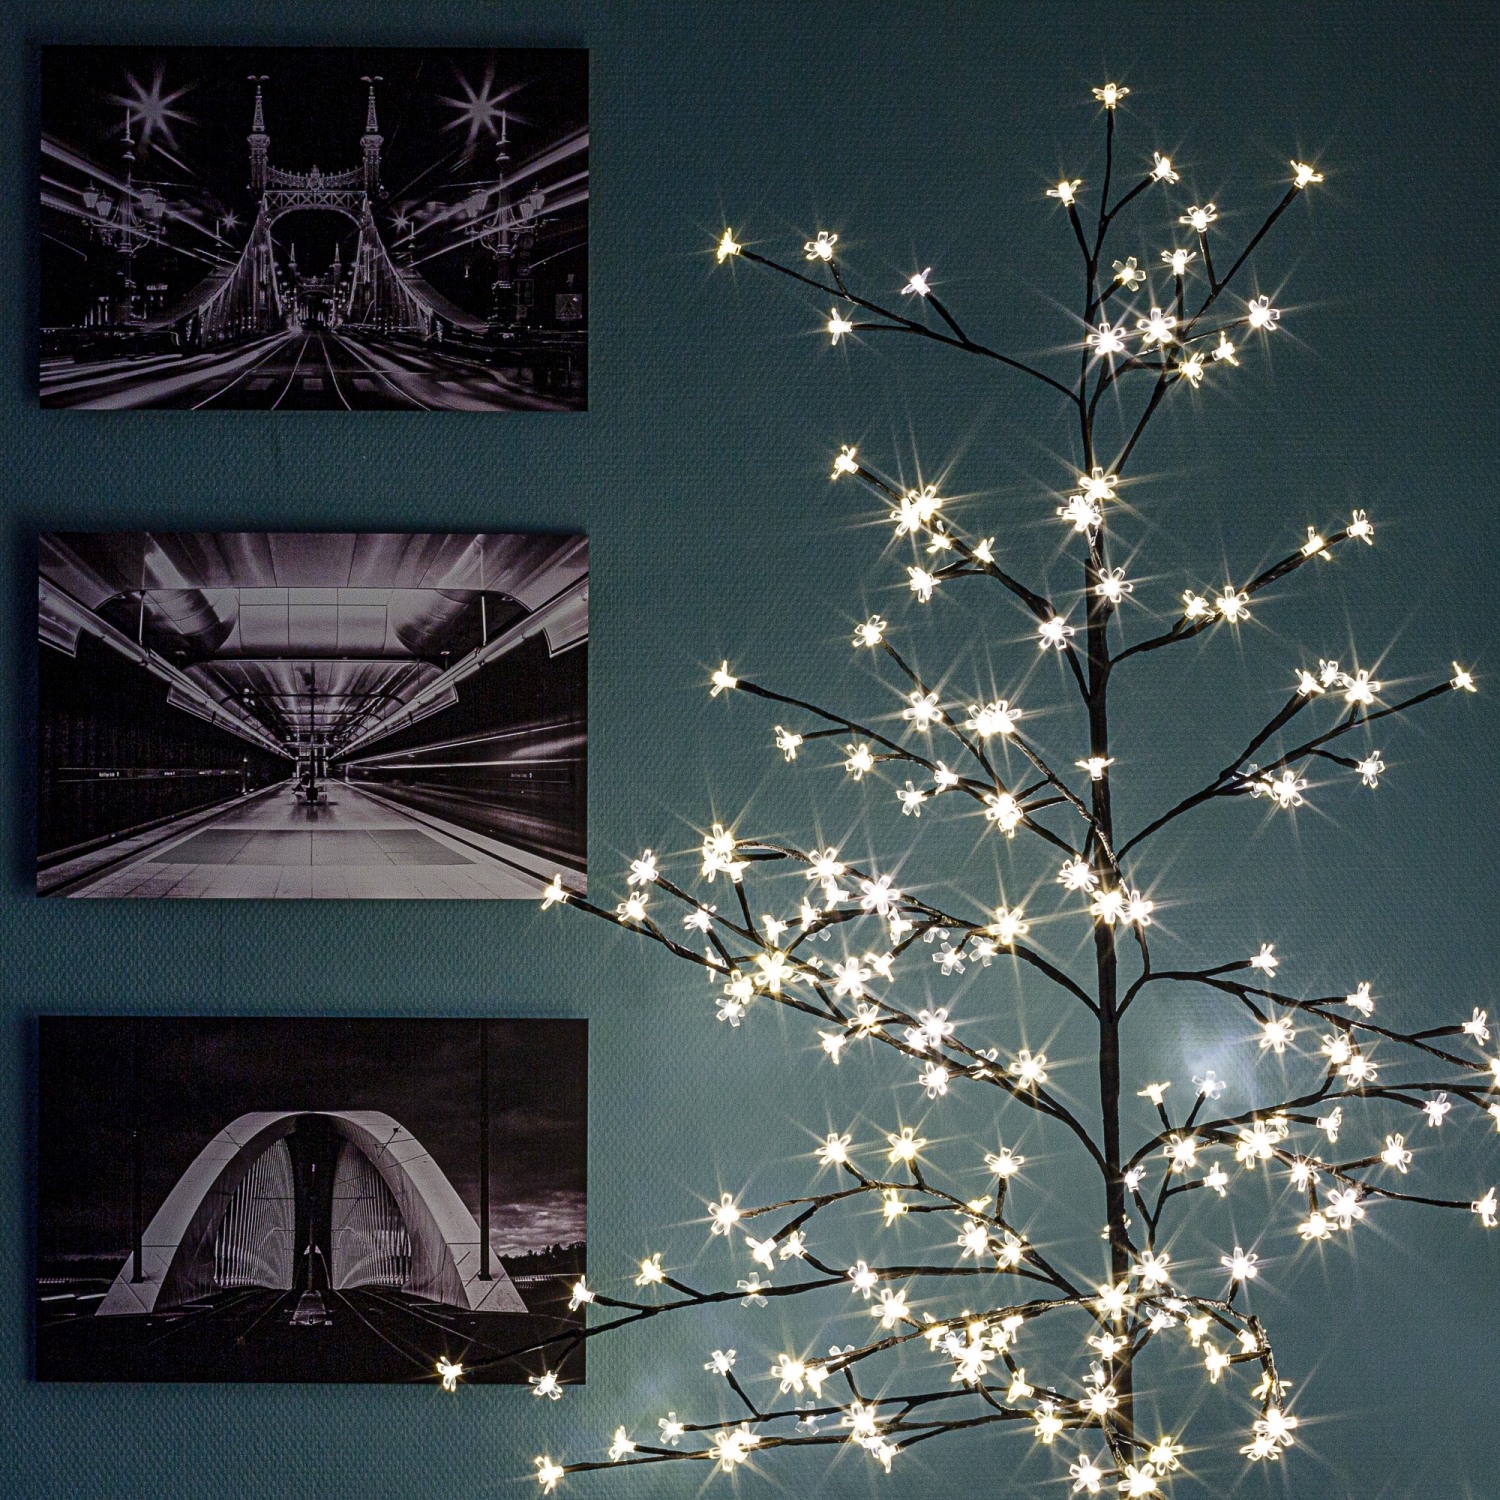 Led Baum Weihnachtsbaum 180 x 80 cm braun & schneeweiß für Innen und Außen  11120